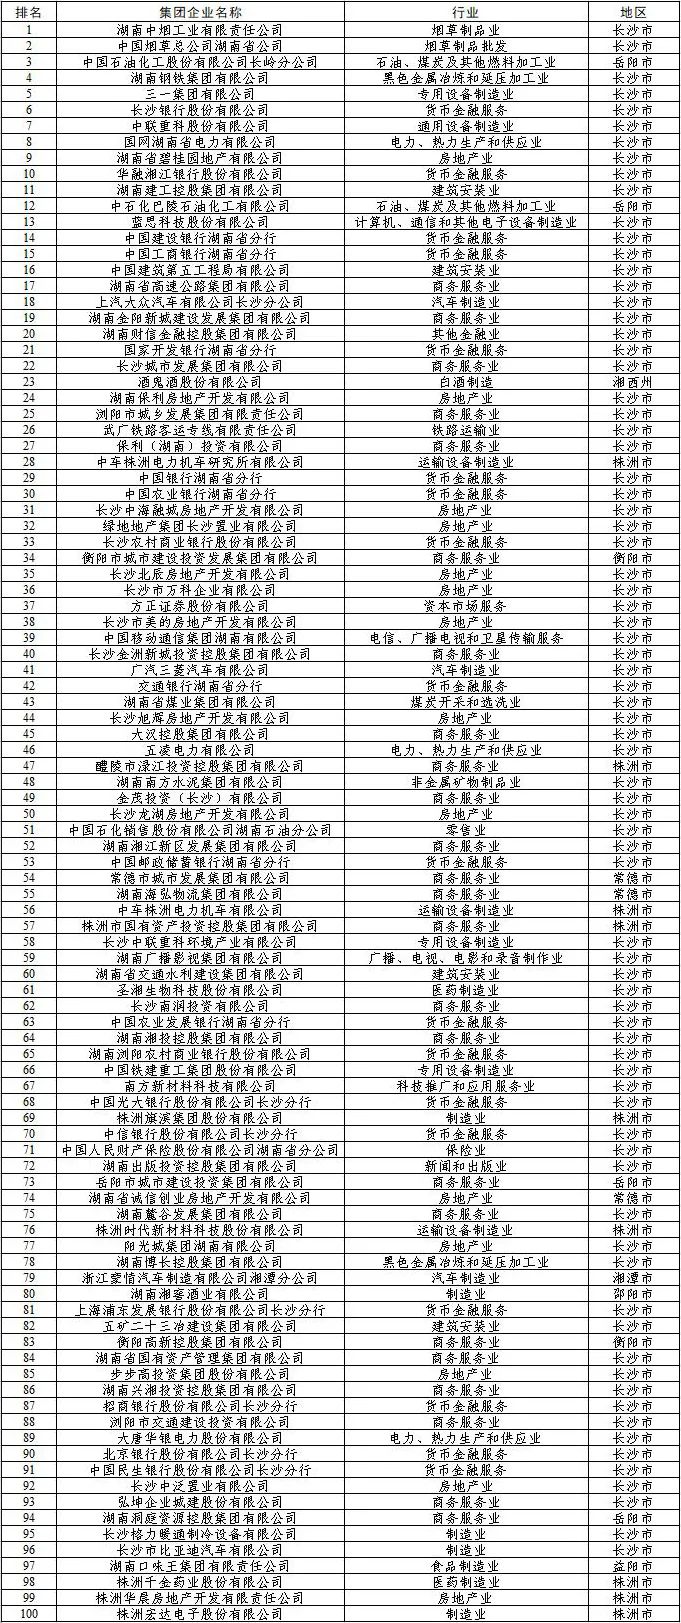 湖南省纳税企业排名：,近期信息